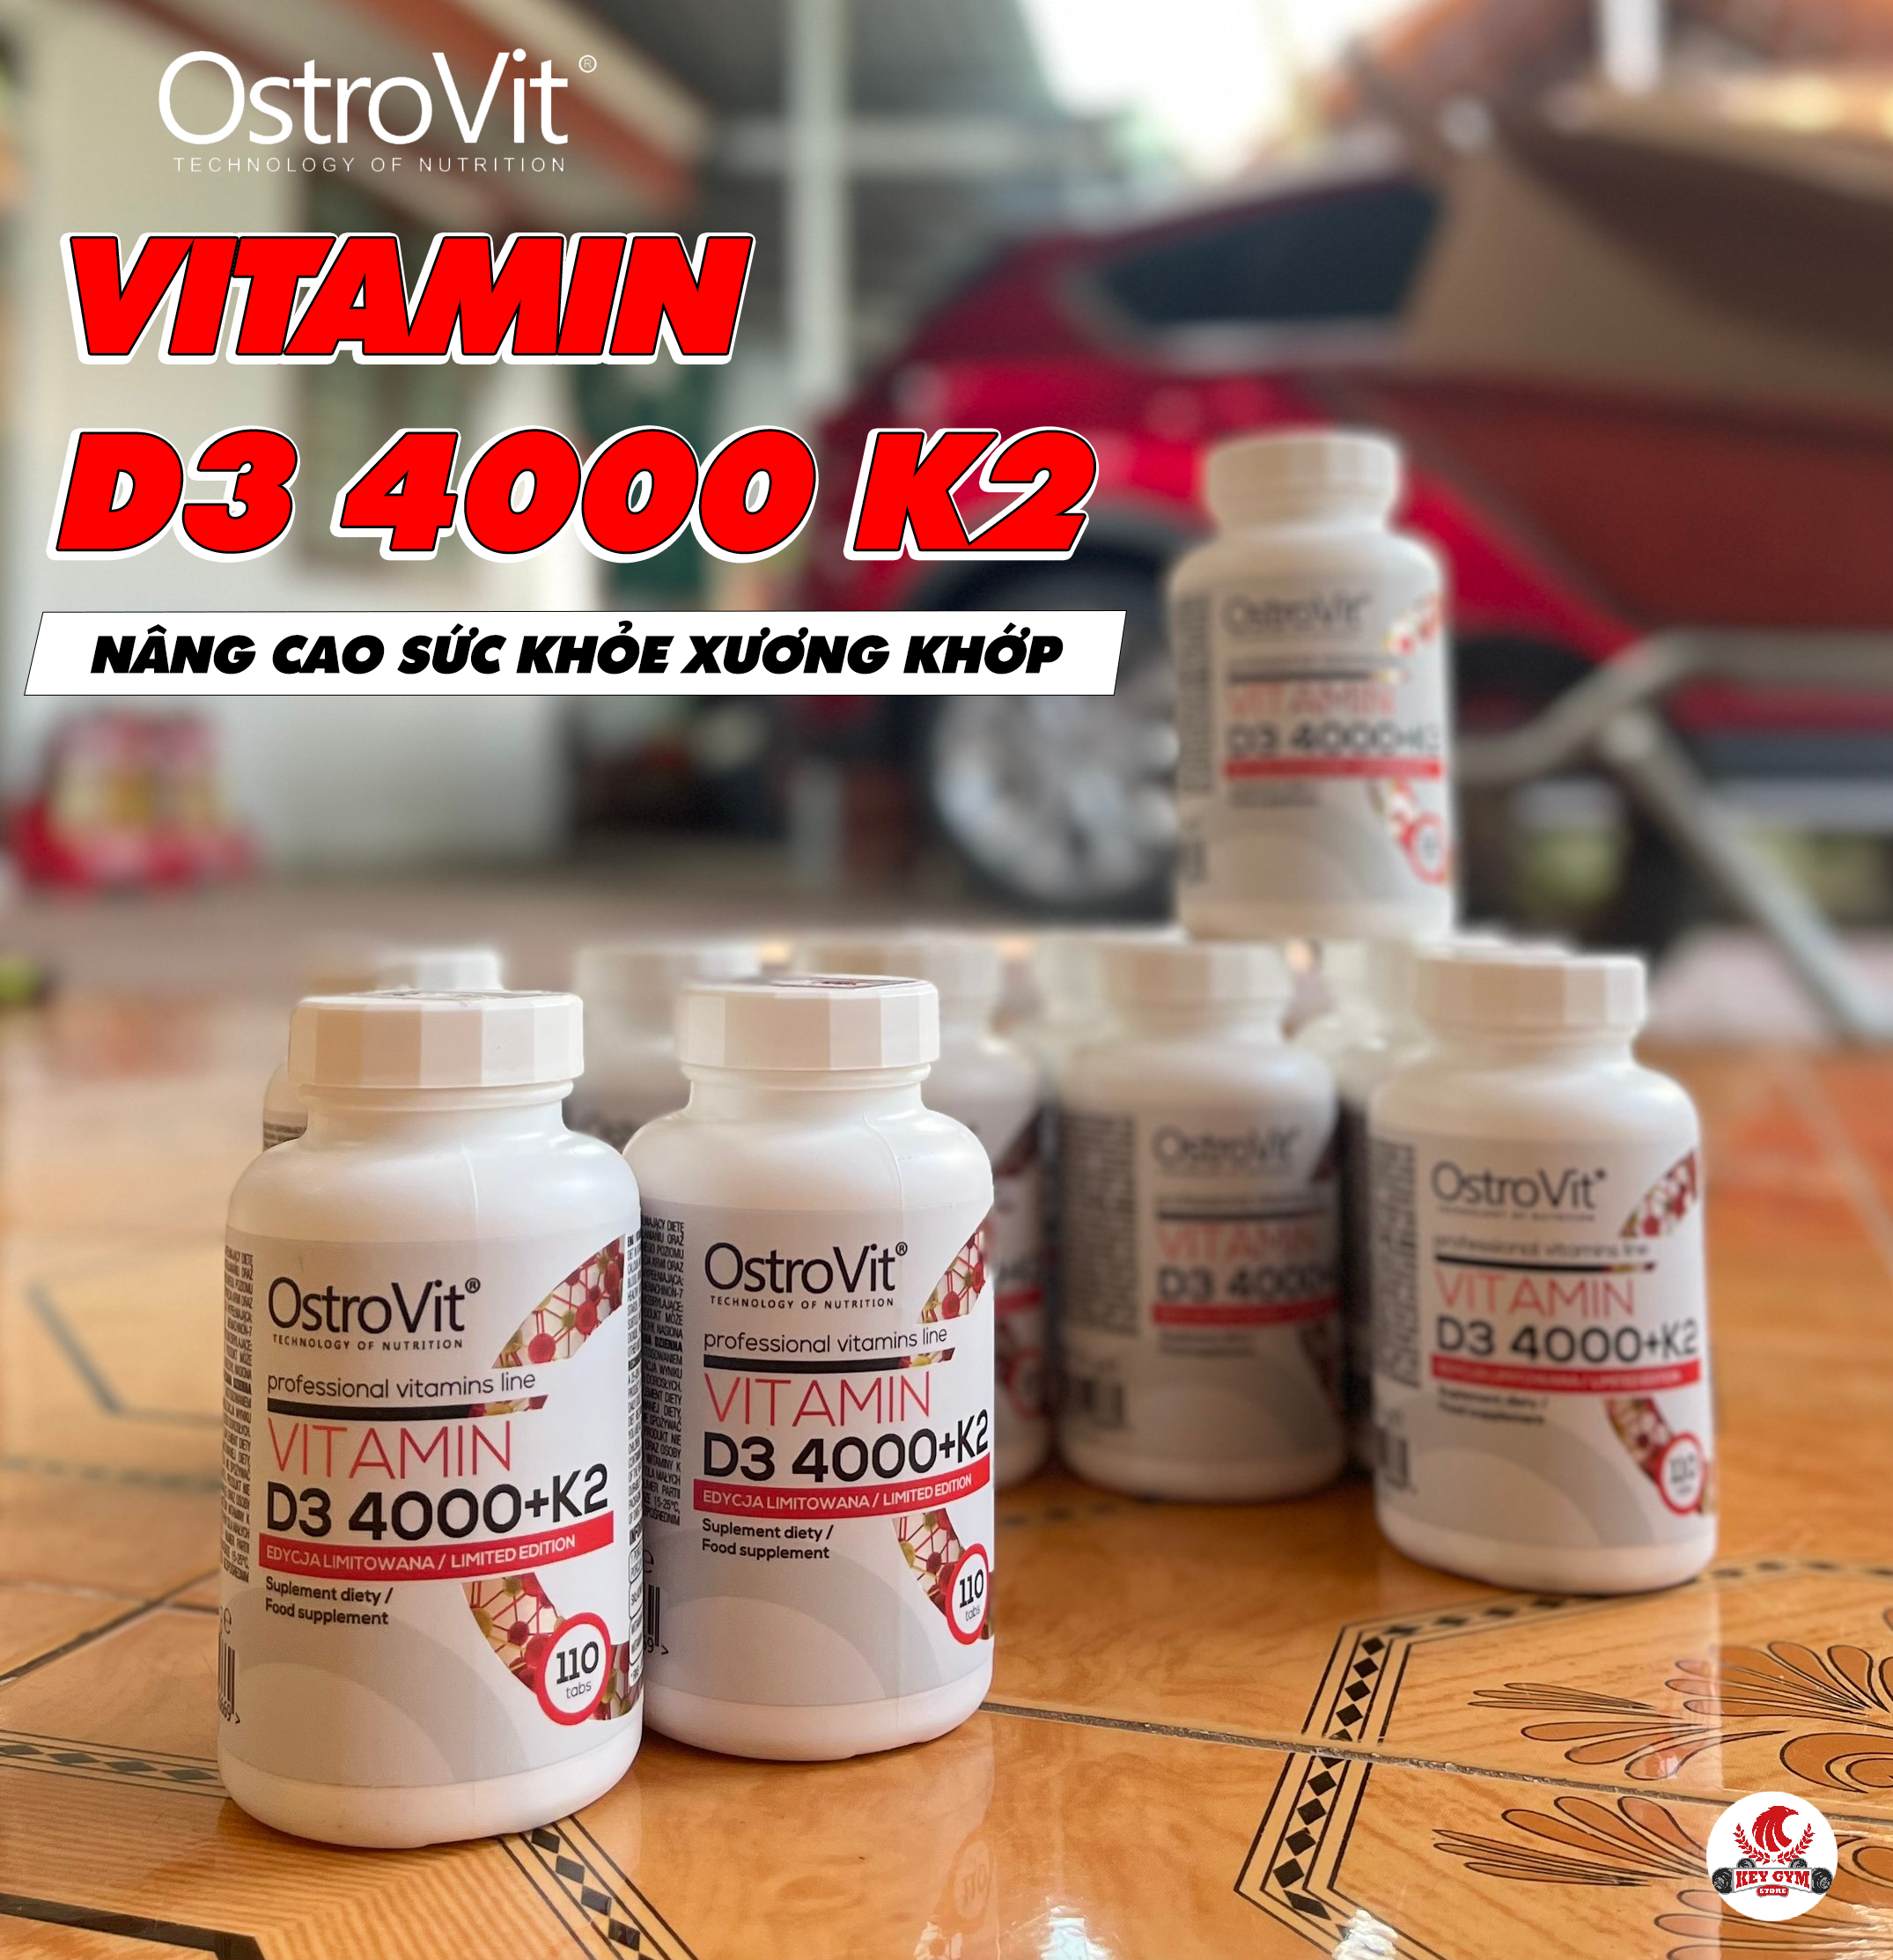 OSTROVIT VITAMIN D3 4000 K2